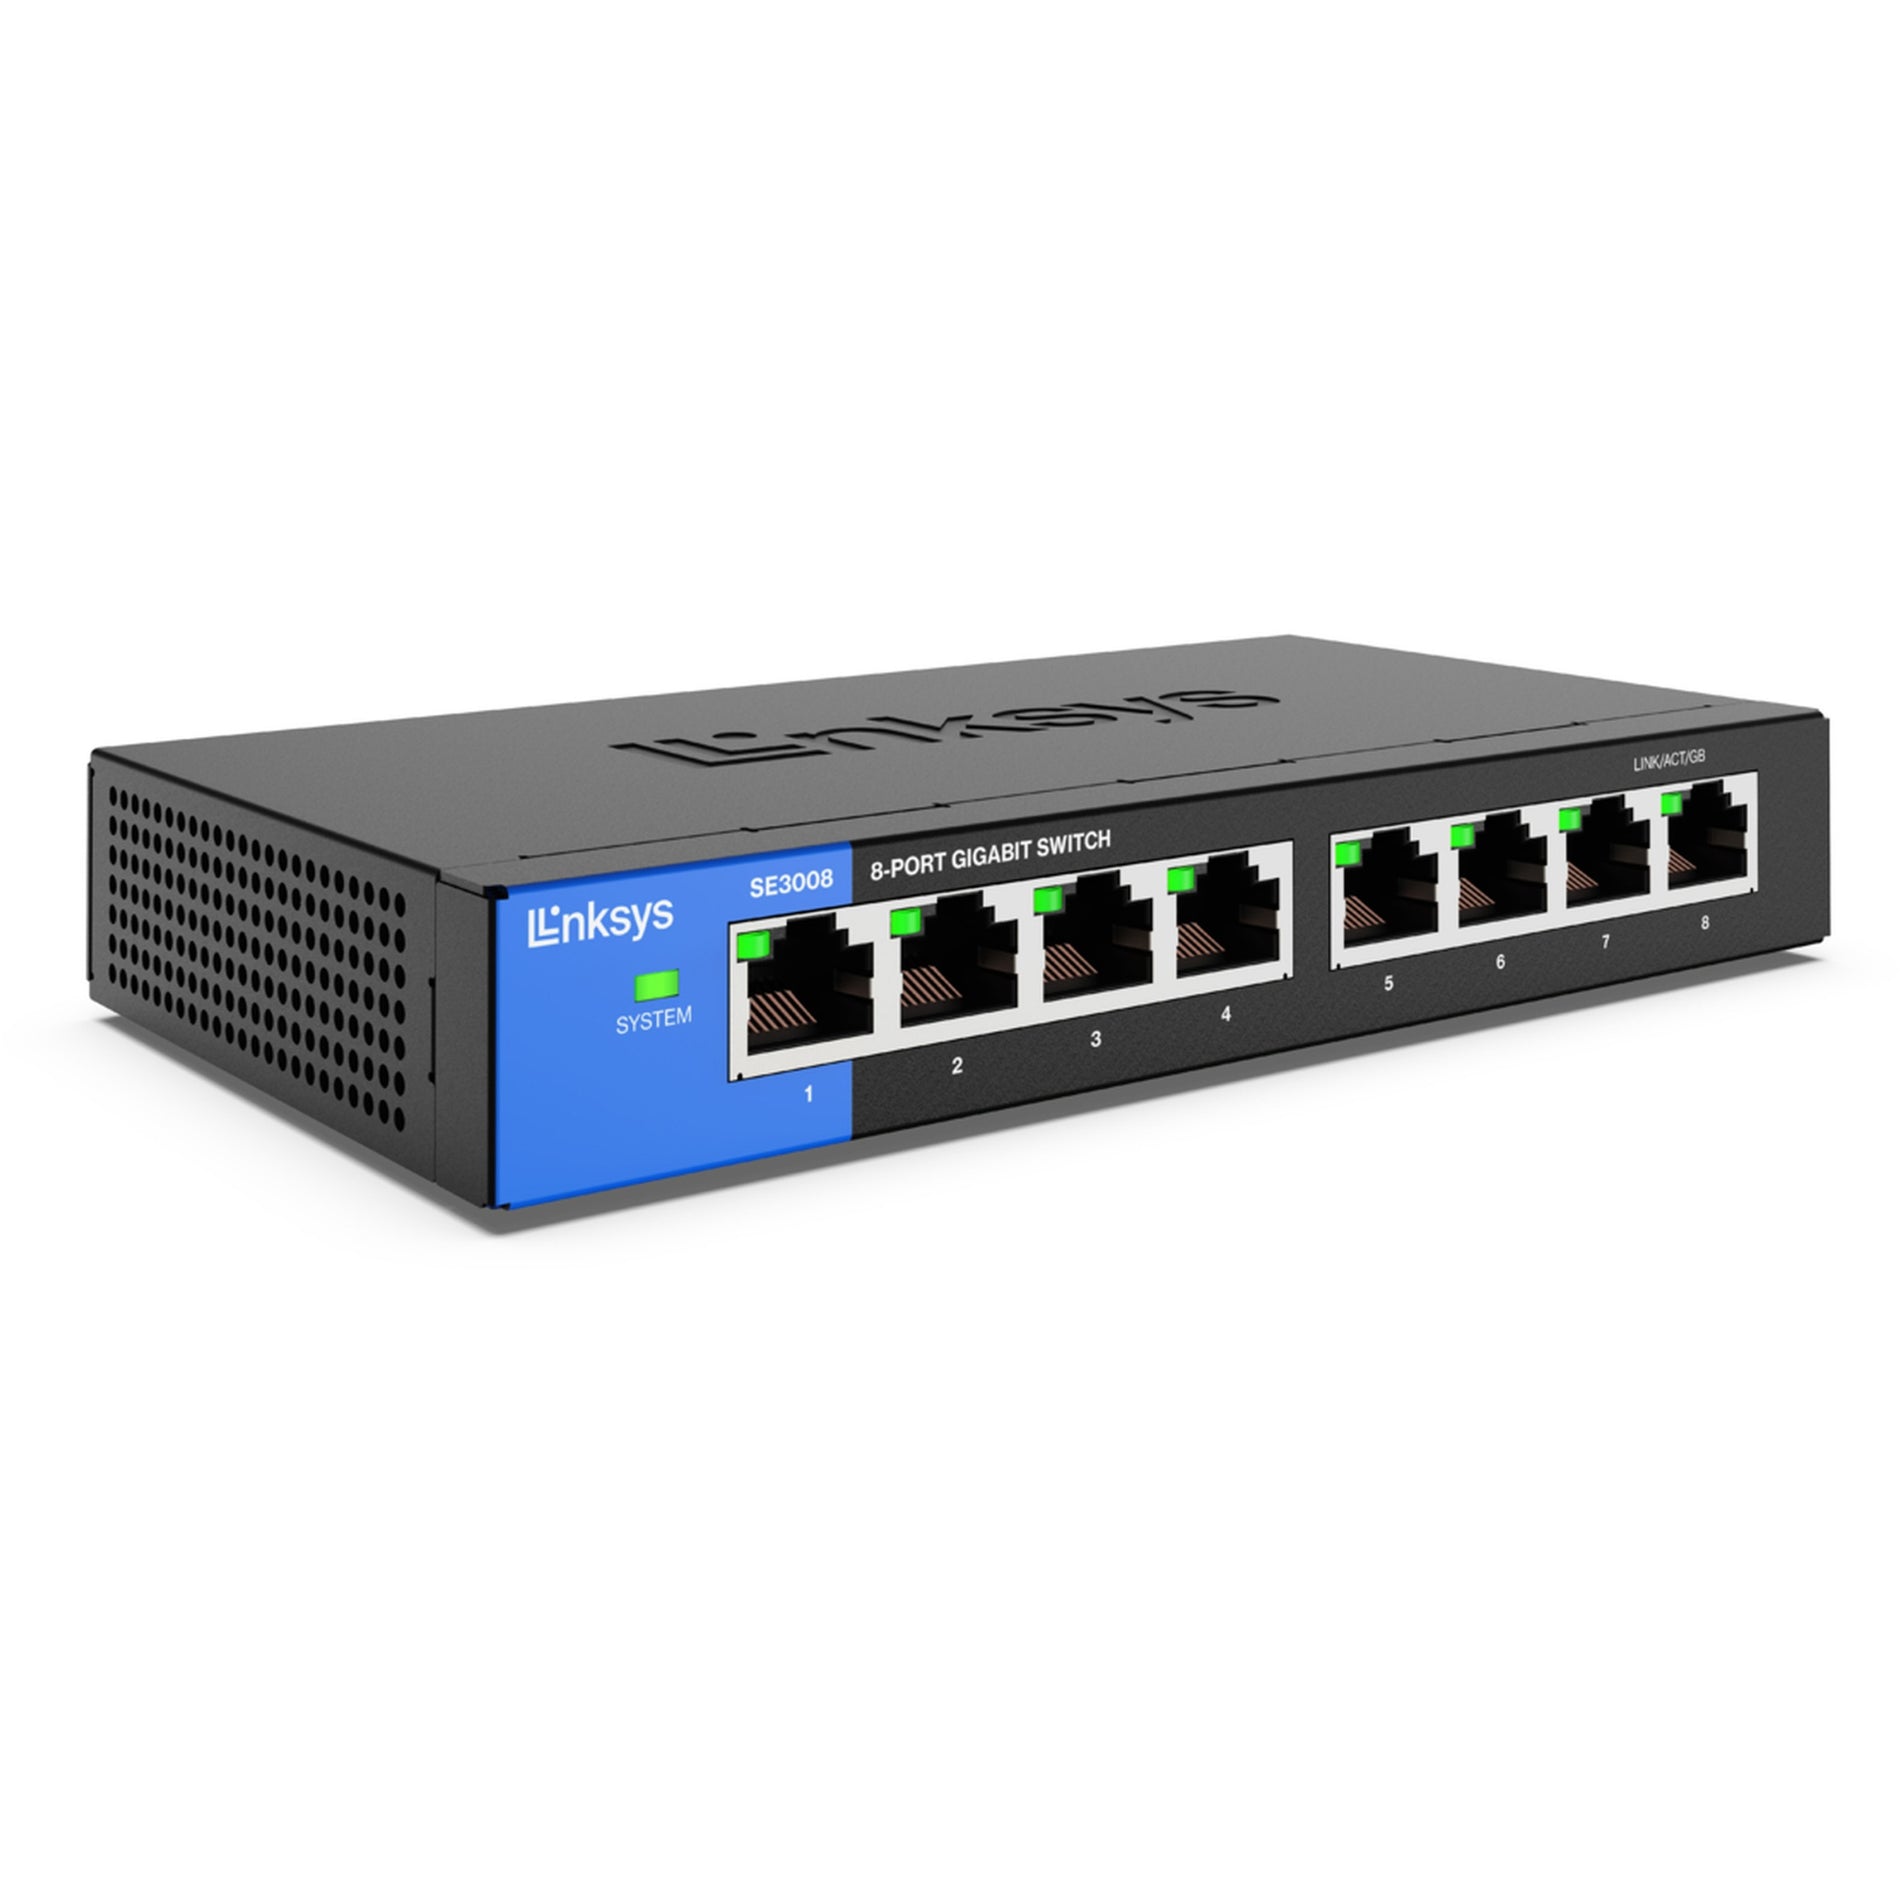 Linksys SE3008 8-Port Gigabit Ethernet Switch High-Speed Netzwerk Konnektivität